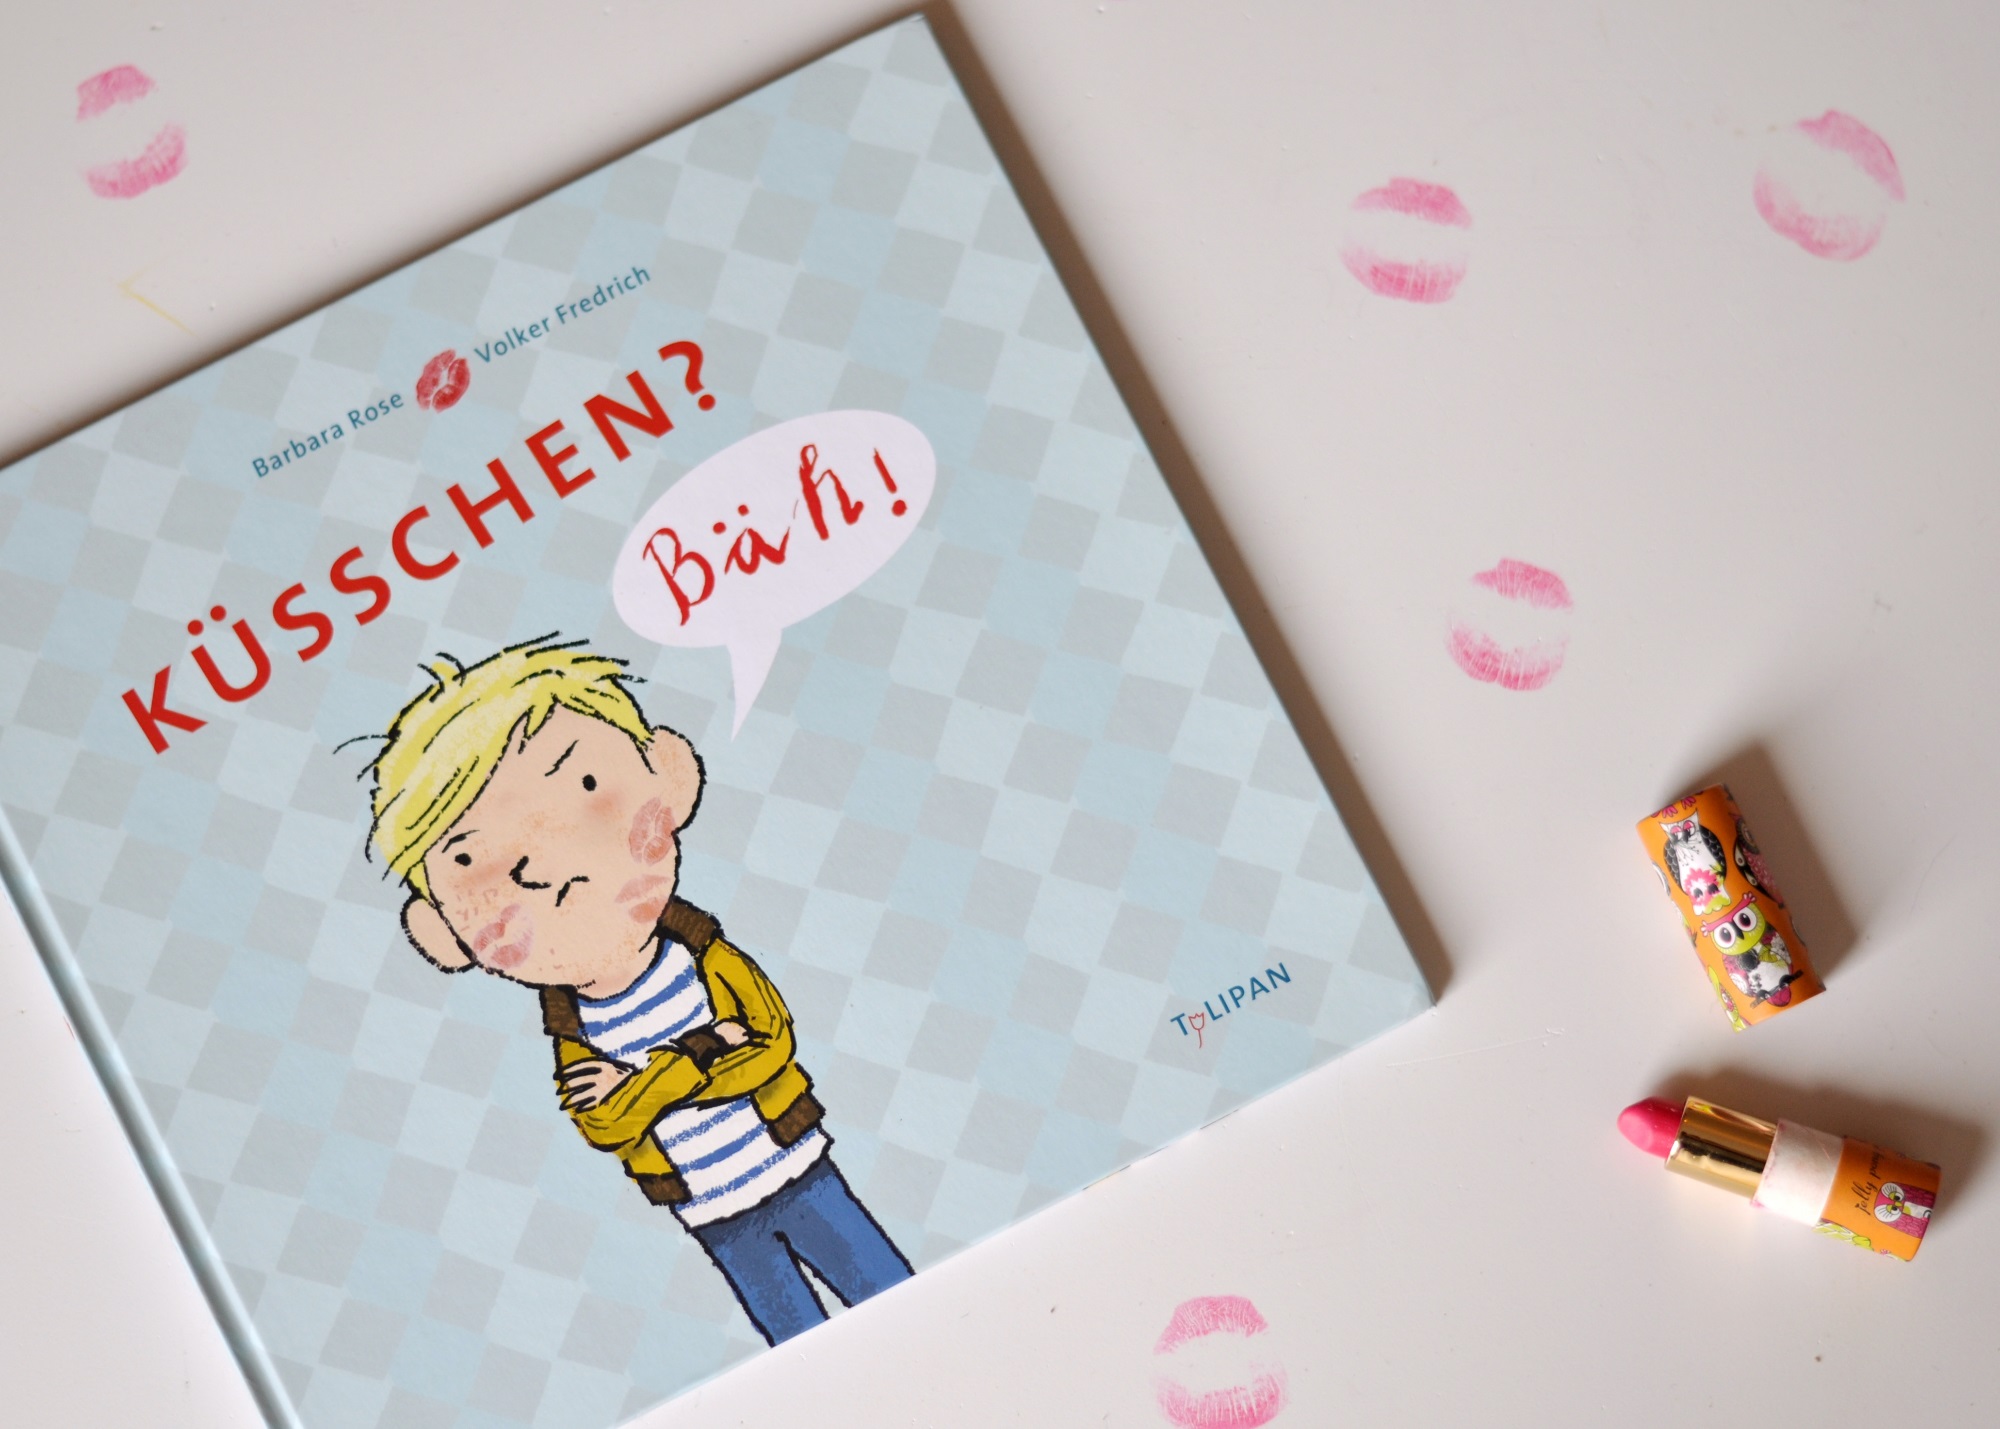 Küsschen? Bäh! Ein Bilderbuch über das Nein-sagen #Bilderbuch #Kinderbuch